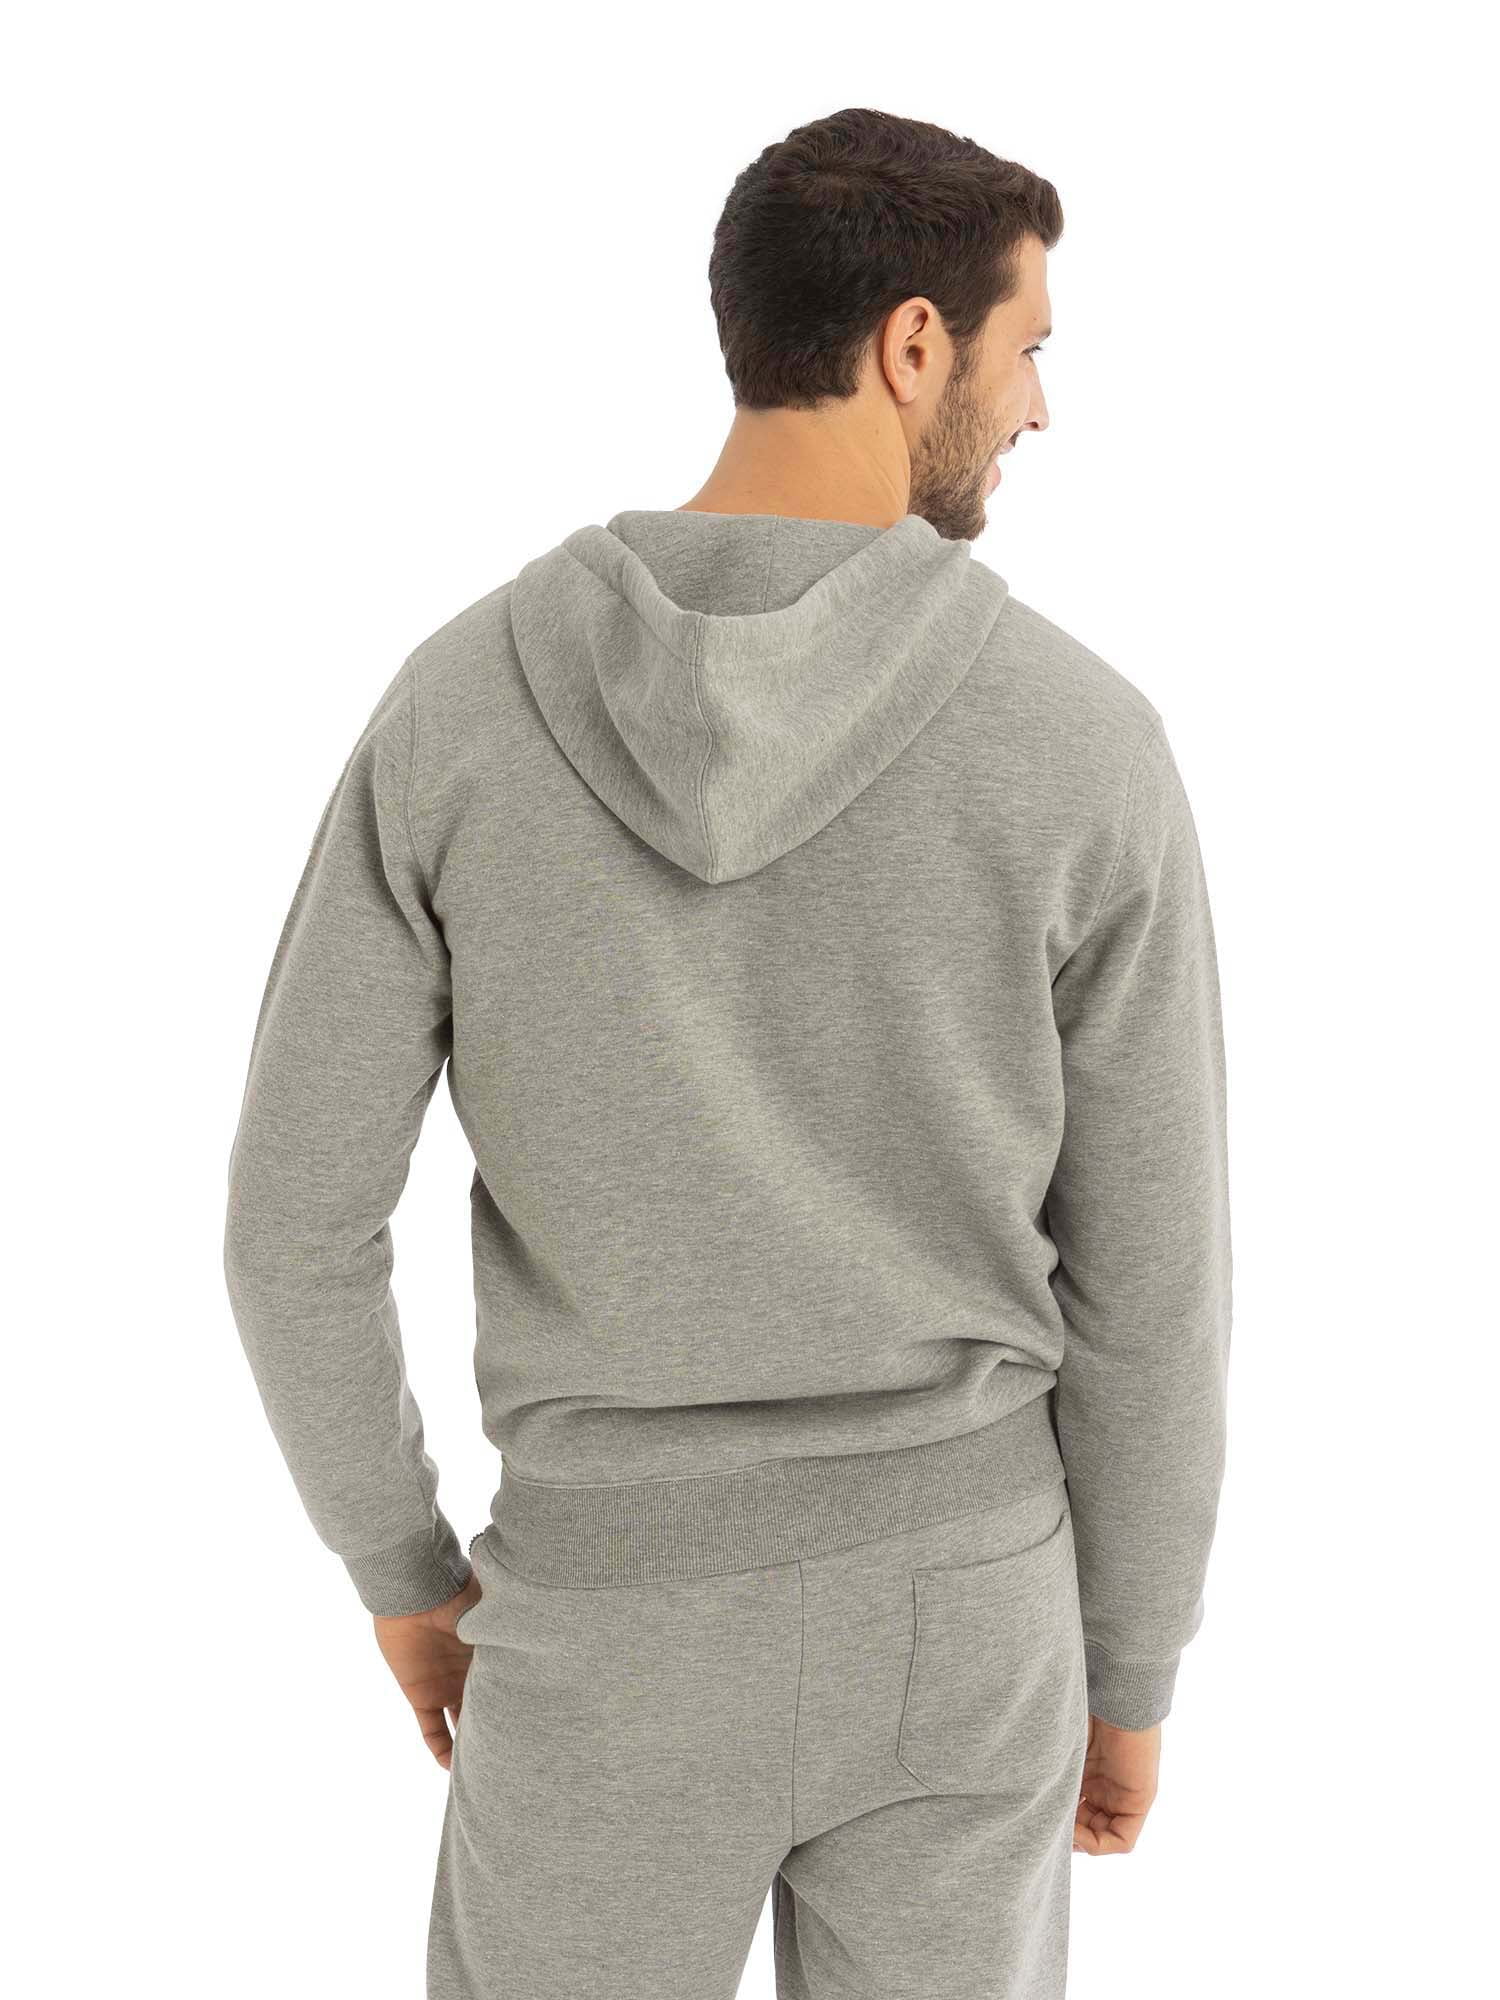 U.S. Polo Assn. Men's Full-Zip Fleece Hoodie Sweatshirt 